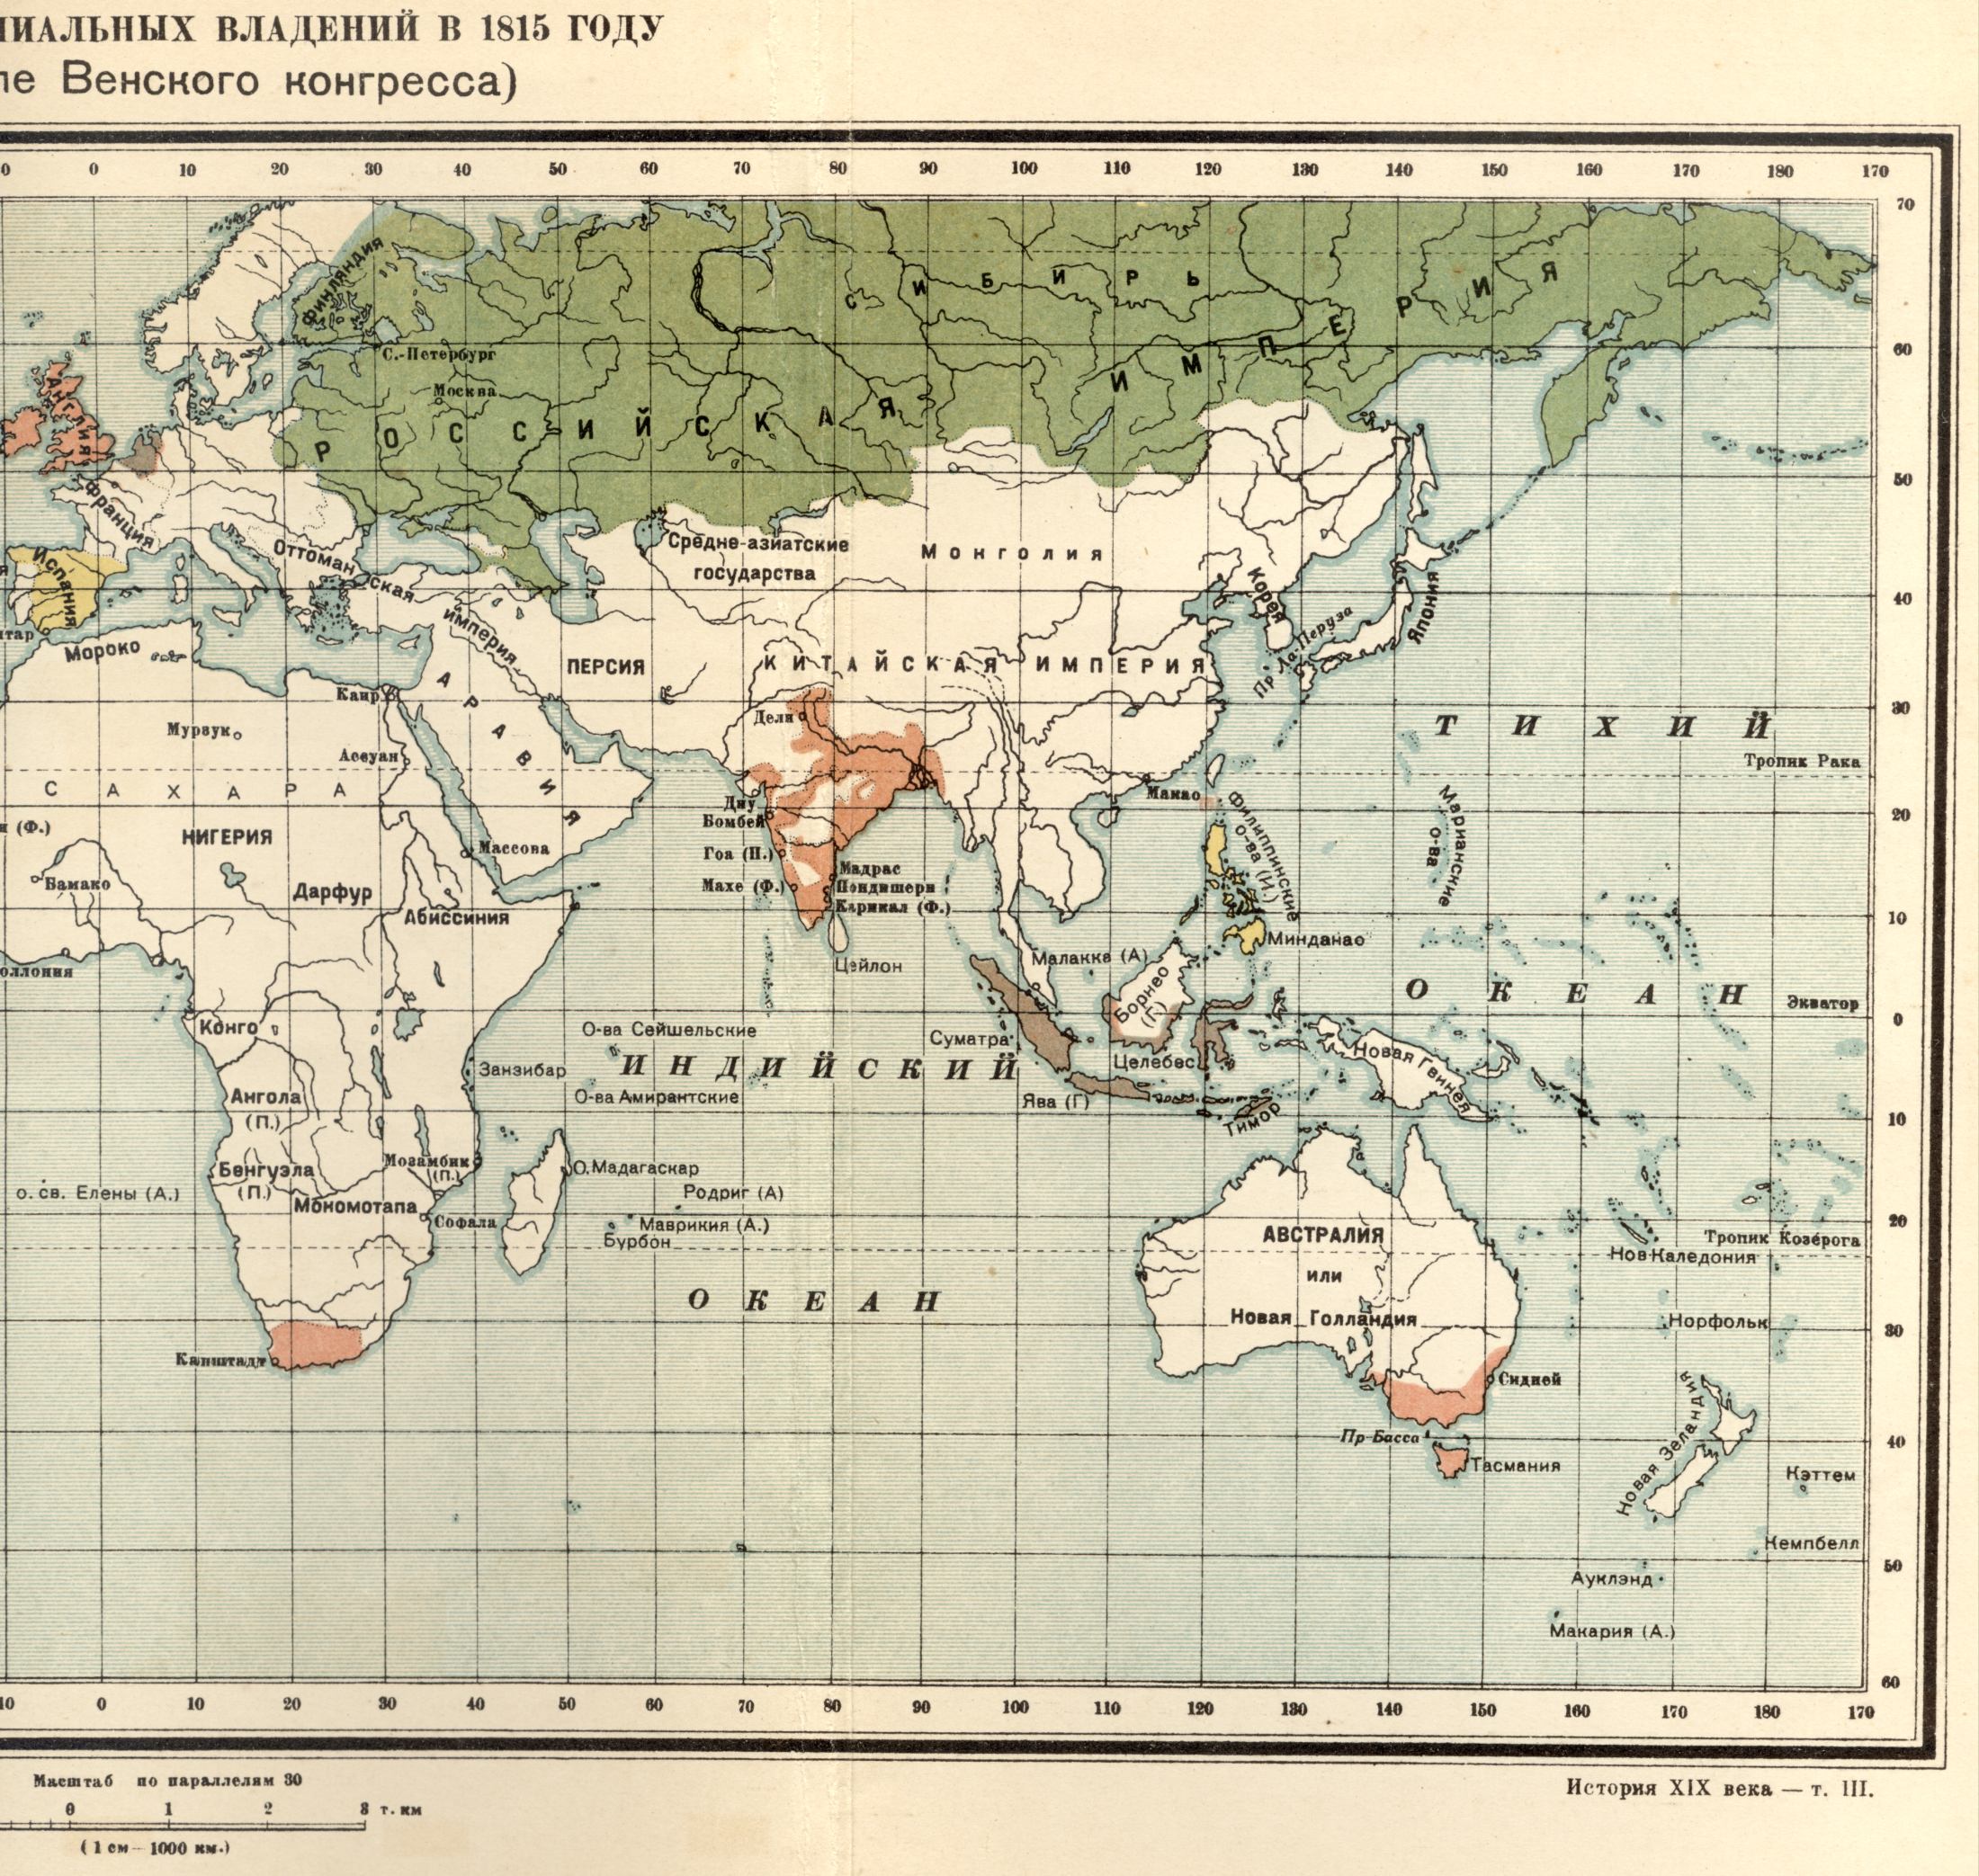 1815 год. Политическая карта мира - карта колониальных владений в 1815 году после Венского конгресса. Скачать бесплатно подробную карту , B0